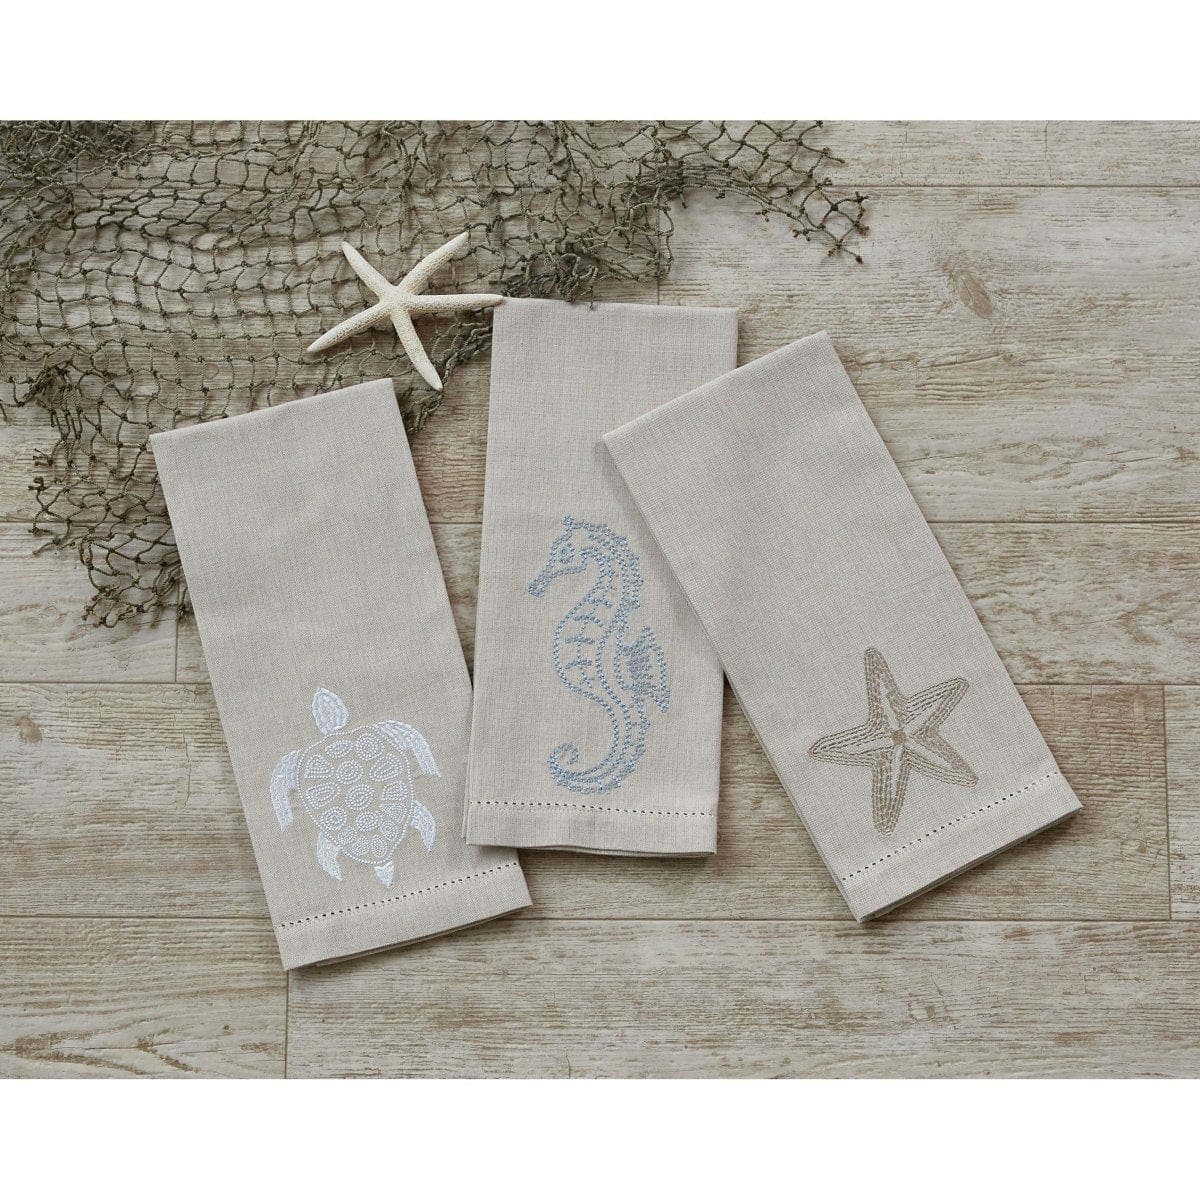 sea horse Decorative Towel-Park Designs-The Village Merchant